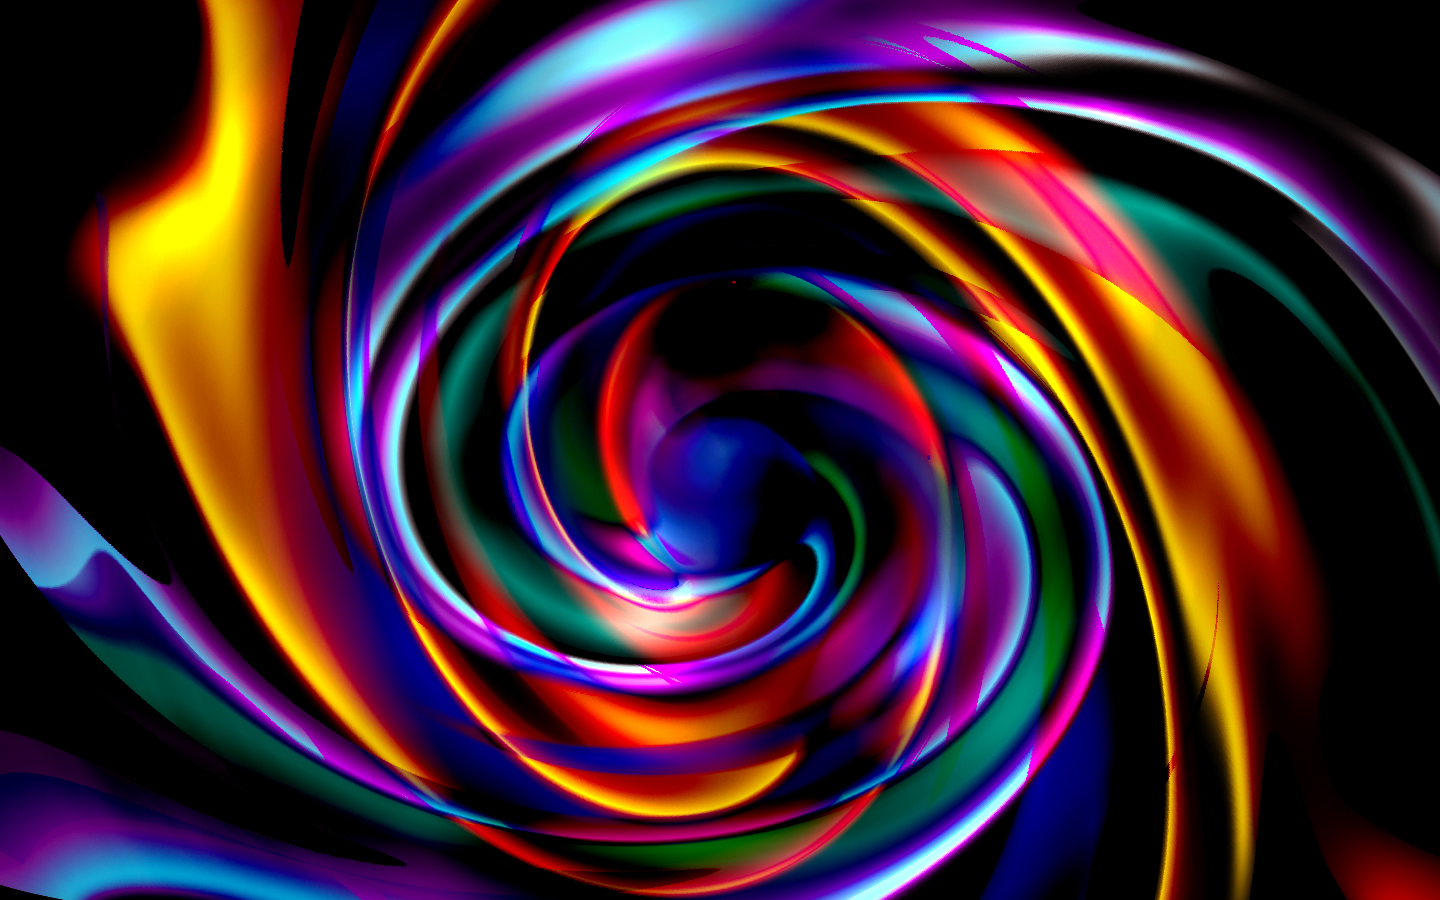 Colour Vortex by kemikkal - Image Abyss.